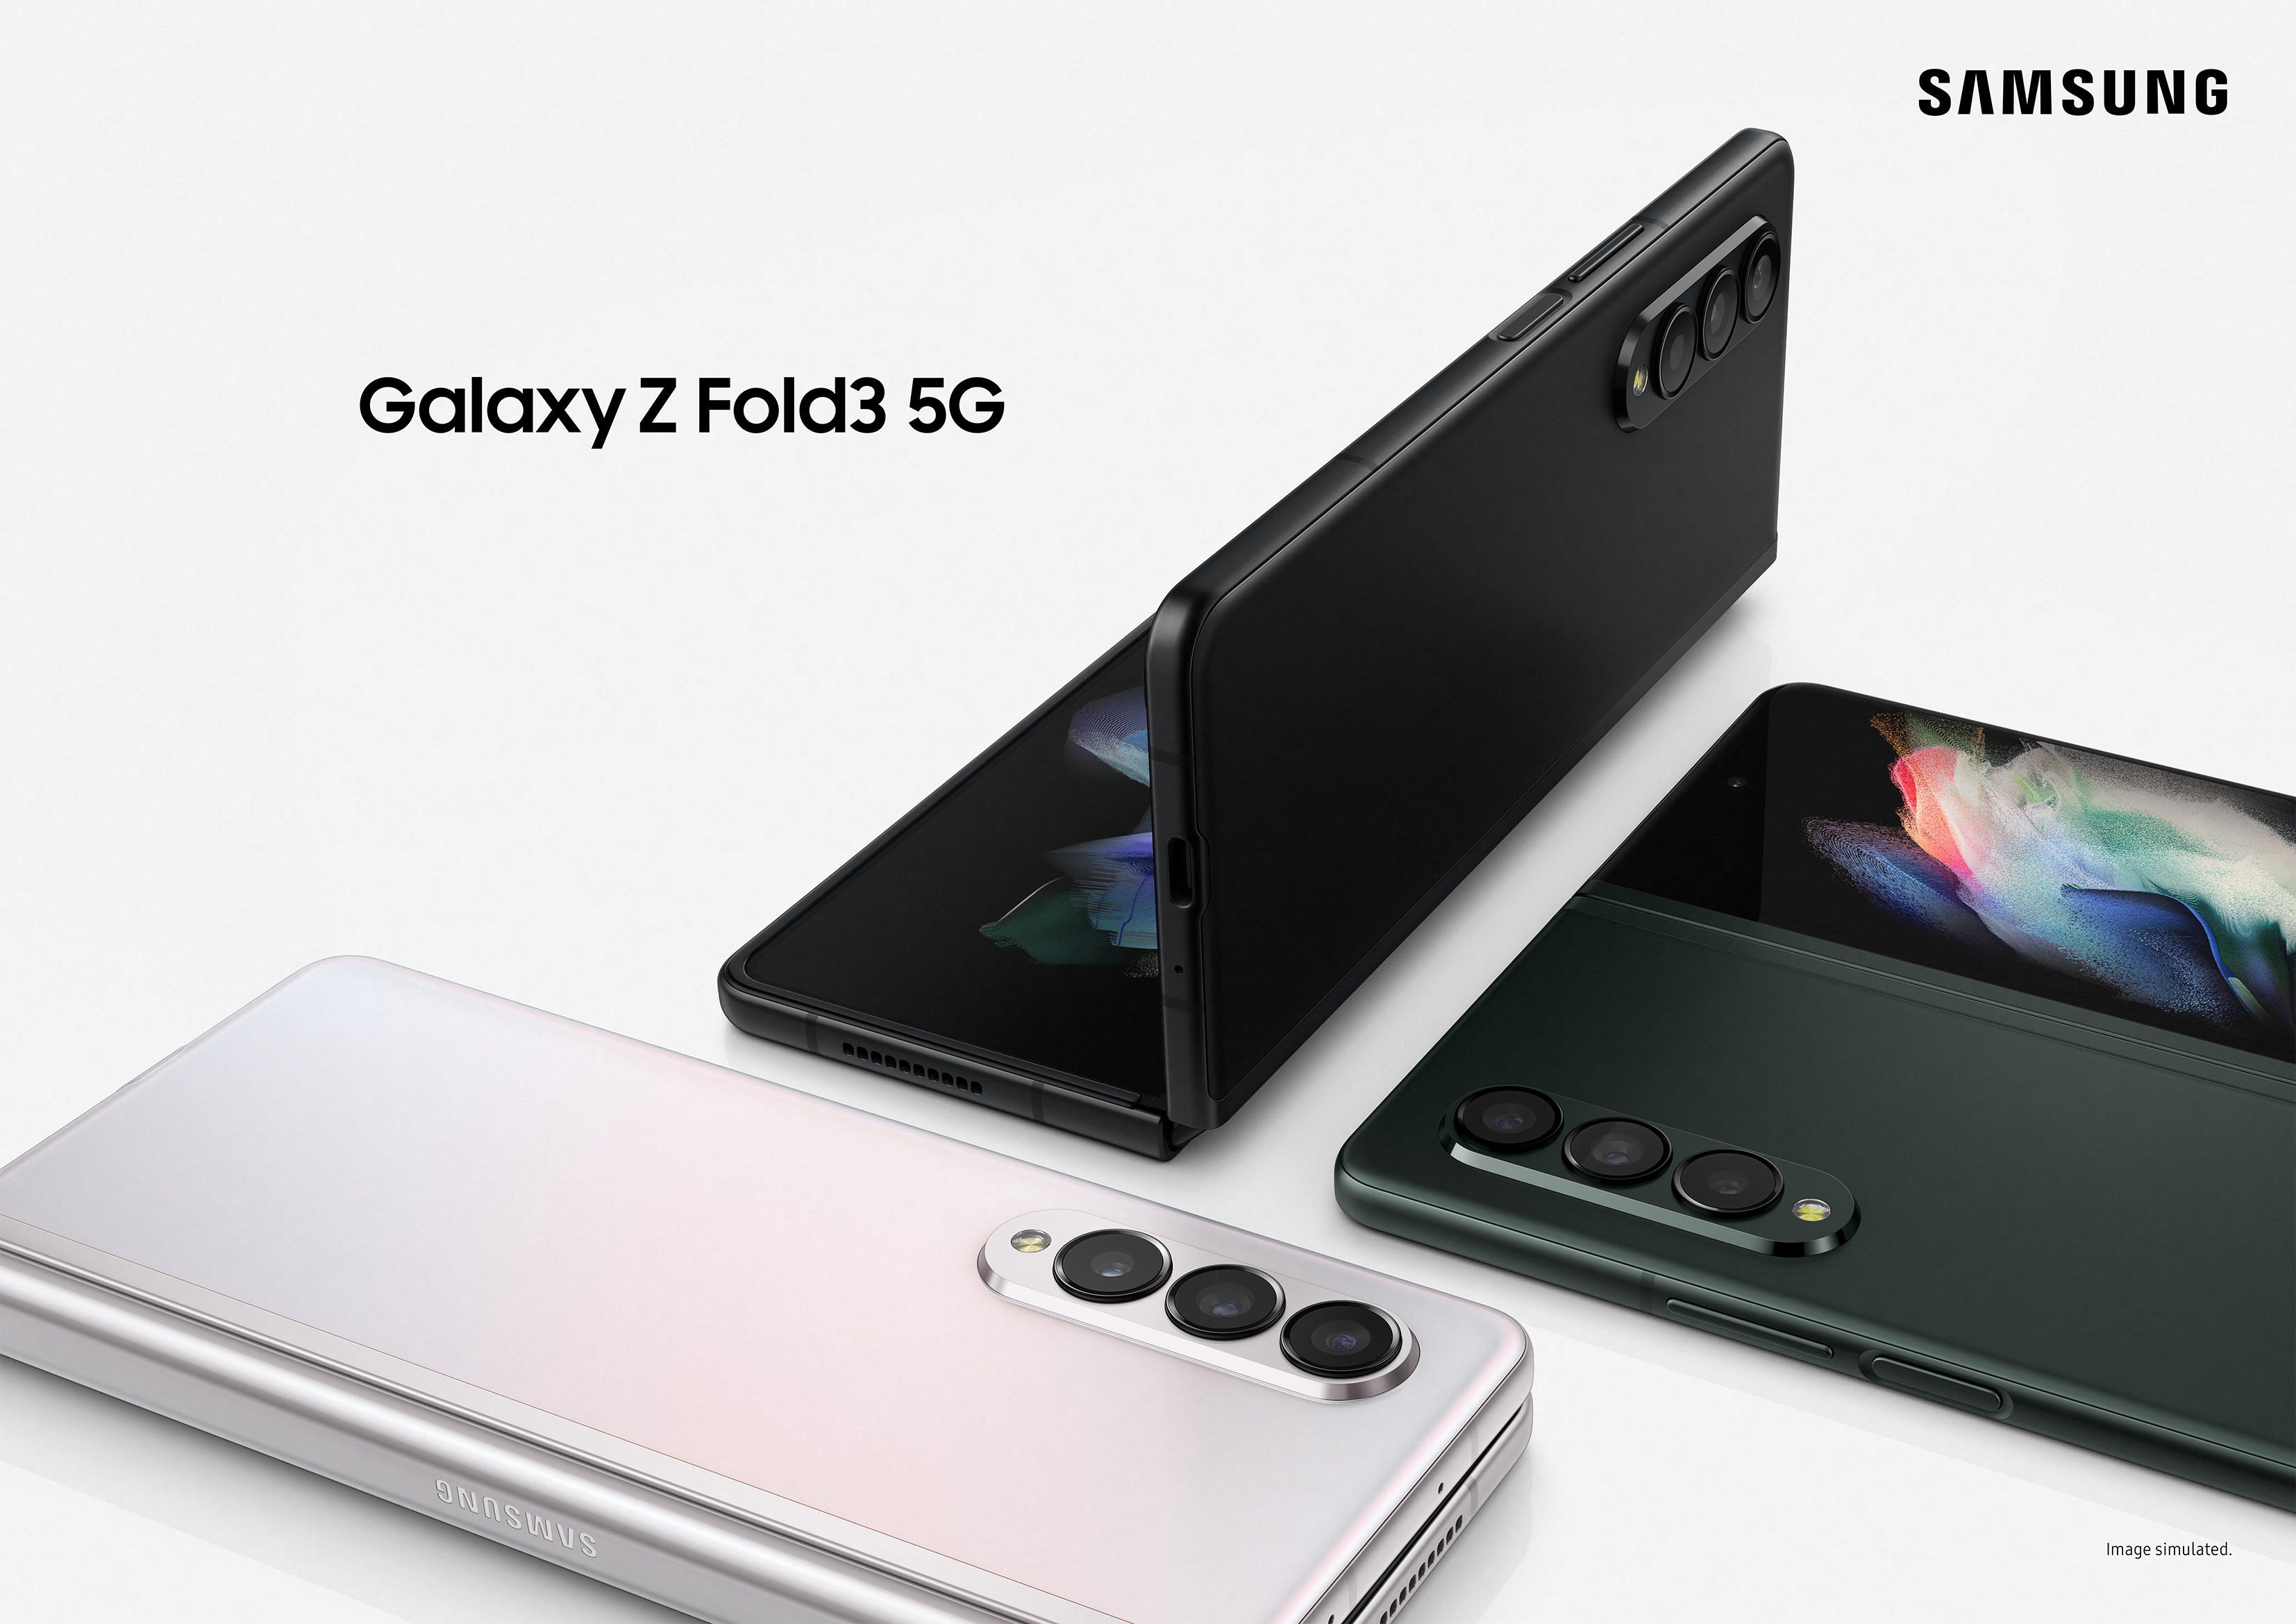 5 สุดยอดนวัตกรรม ครั้งแรกของโลก  Samsung Galaxy Z Fold3 5G สมาร์ทโฟนหน้าจอพับได้ รวมไว้ในเครื่องเดียว